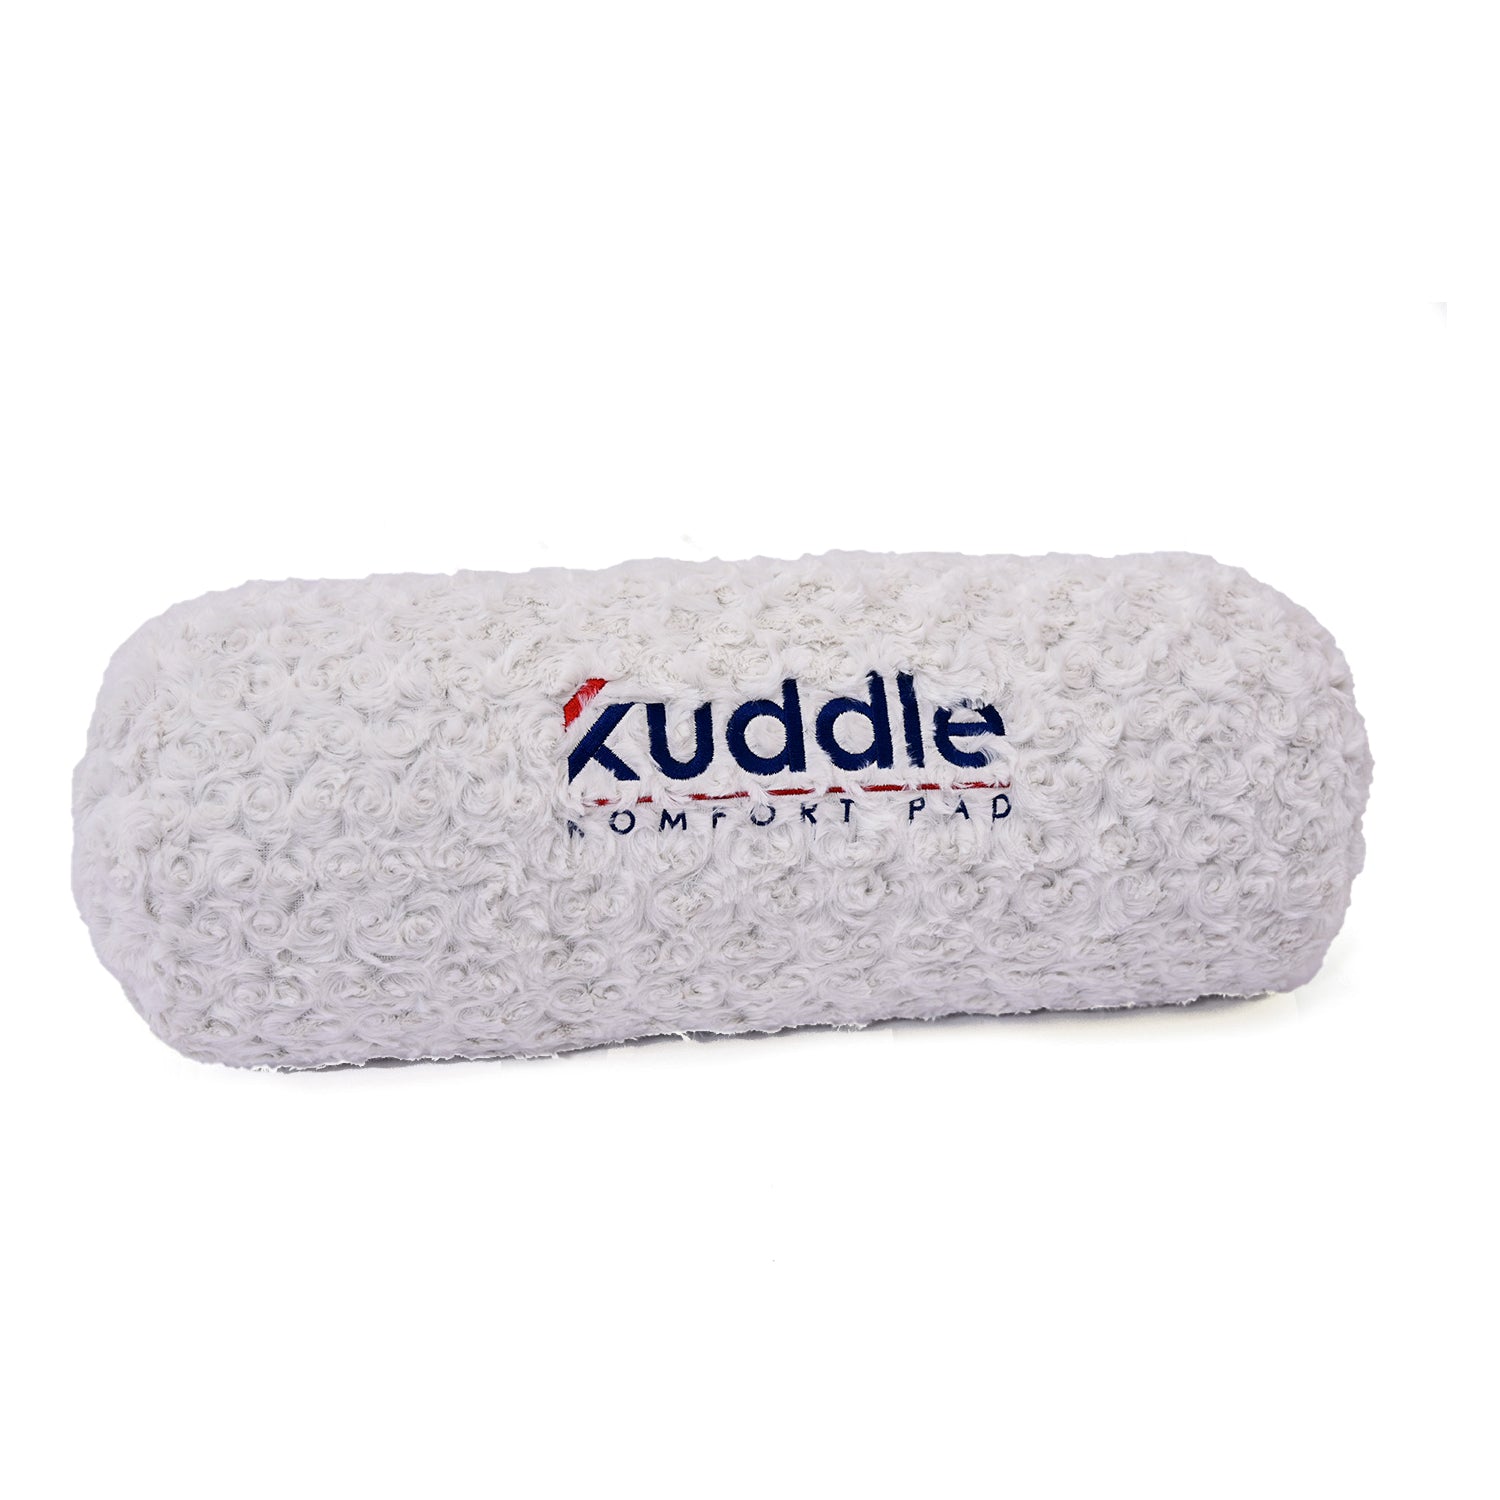 Kuddle Foam Pad Kuddle Sleep